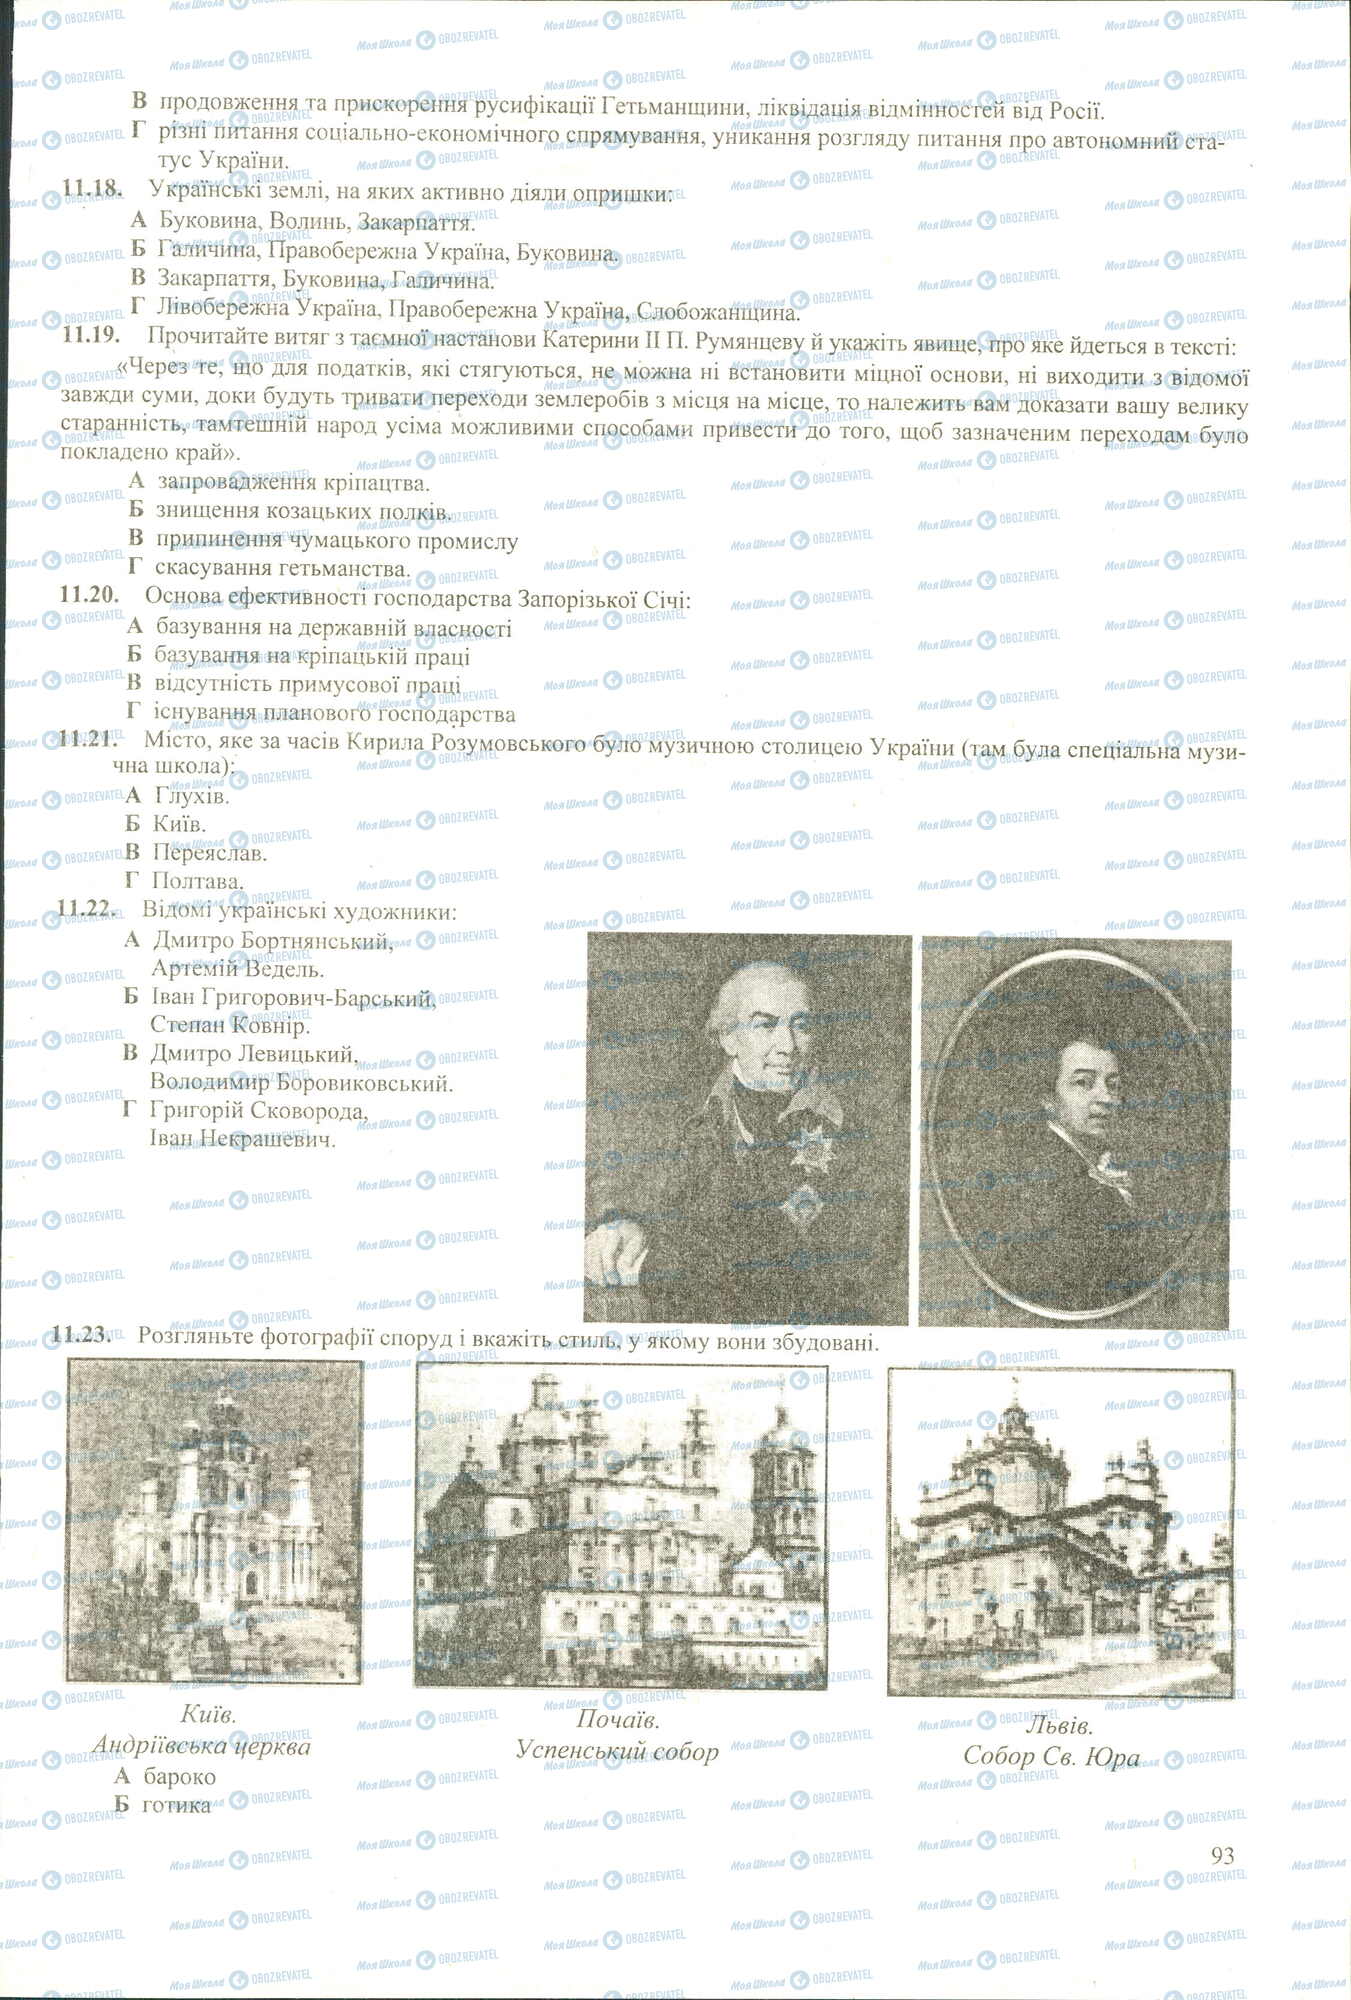 ЗНО История Украины 11 класс страница 18-23